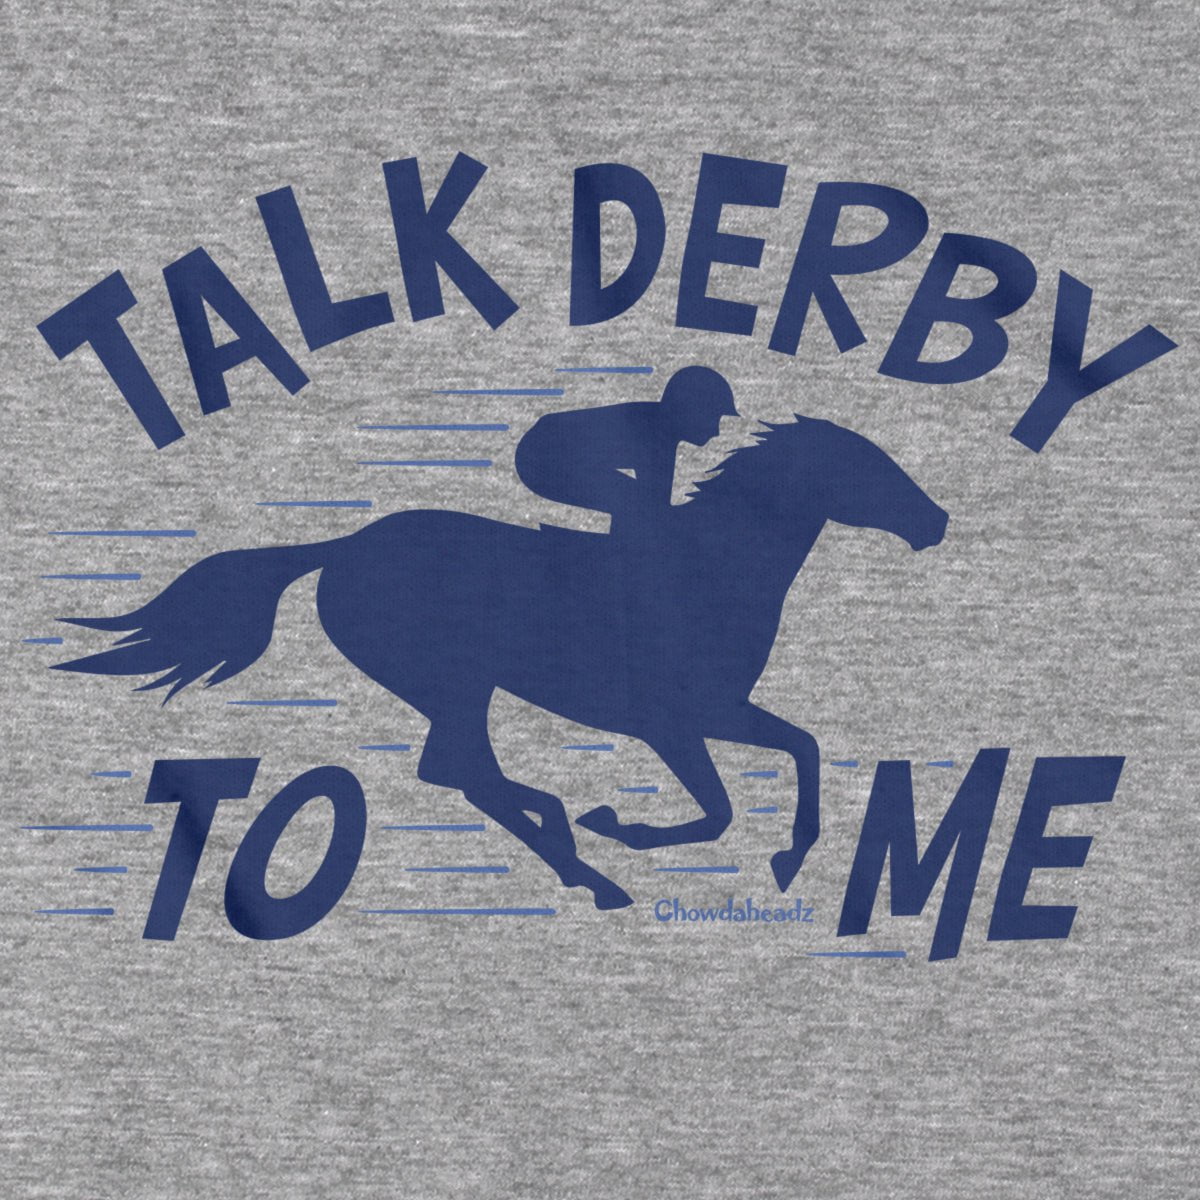 Talk Derby To Me T-Shirt - Chowdaheadz